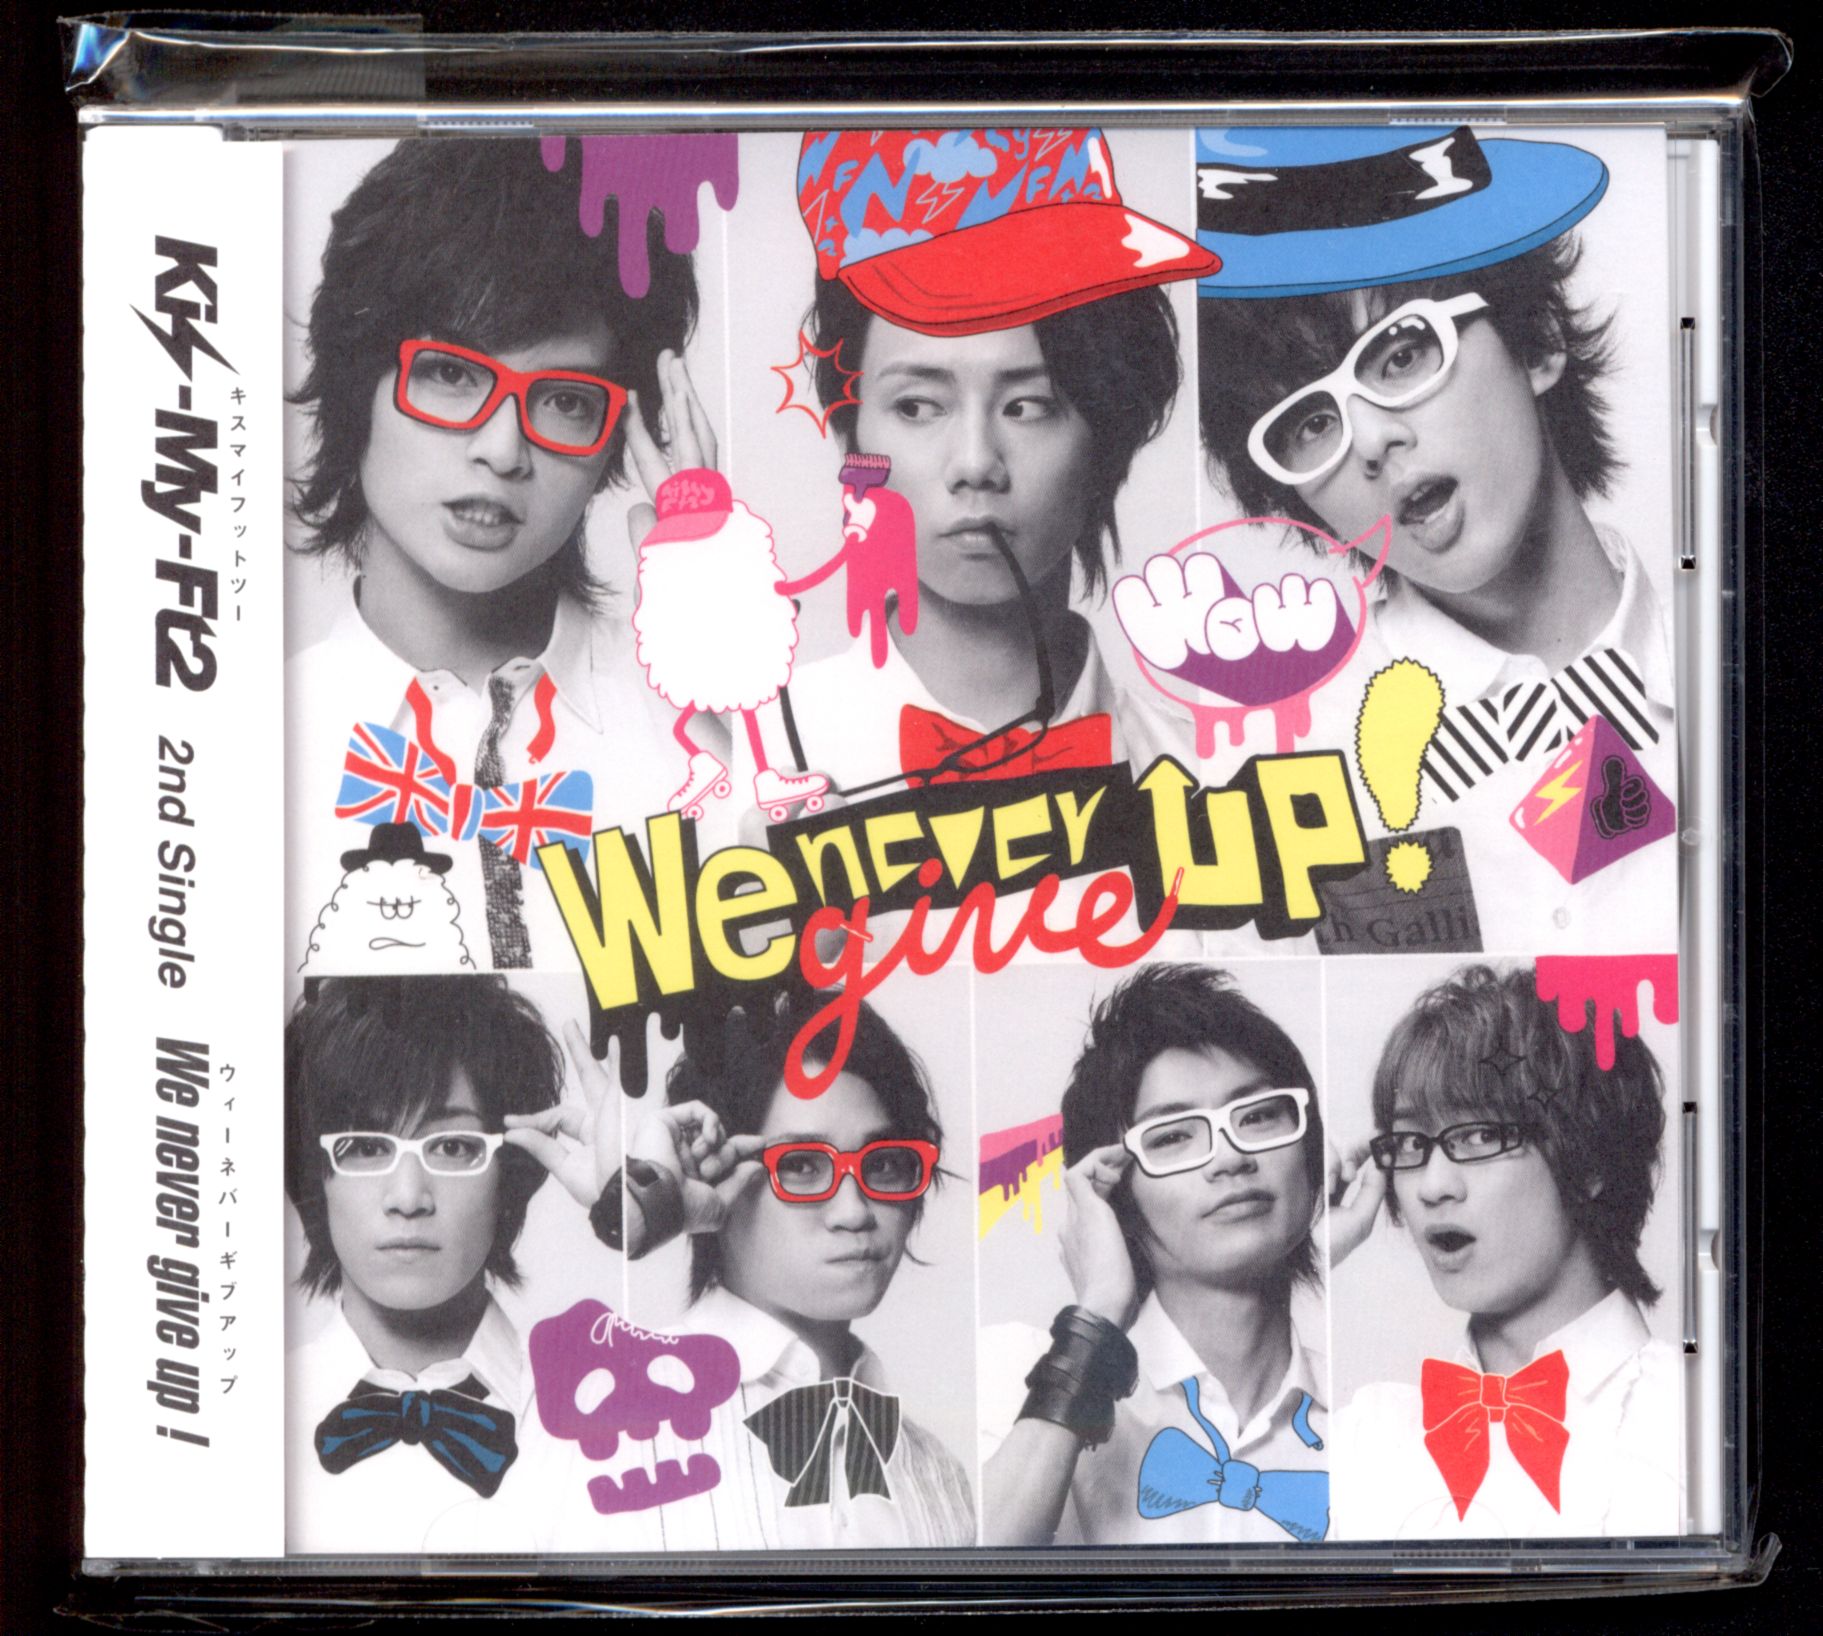 誠実】 We never give up キスマイショップ限定盤 Kis-My-Ft2